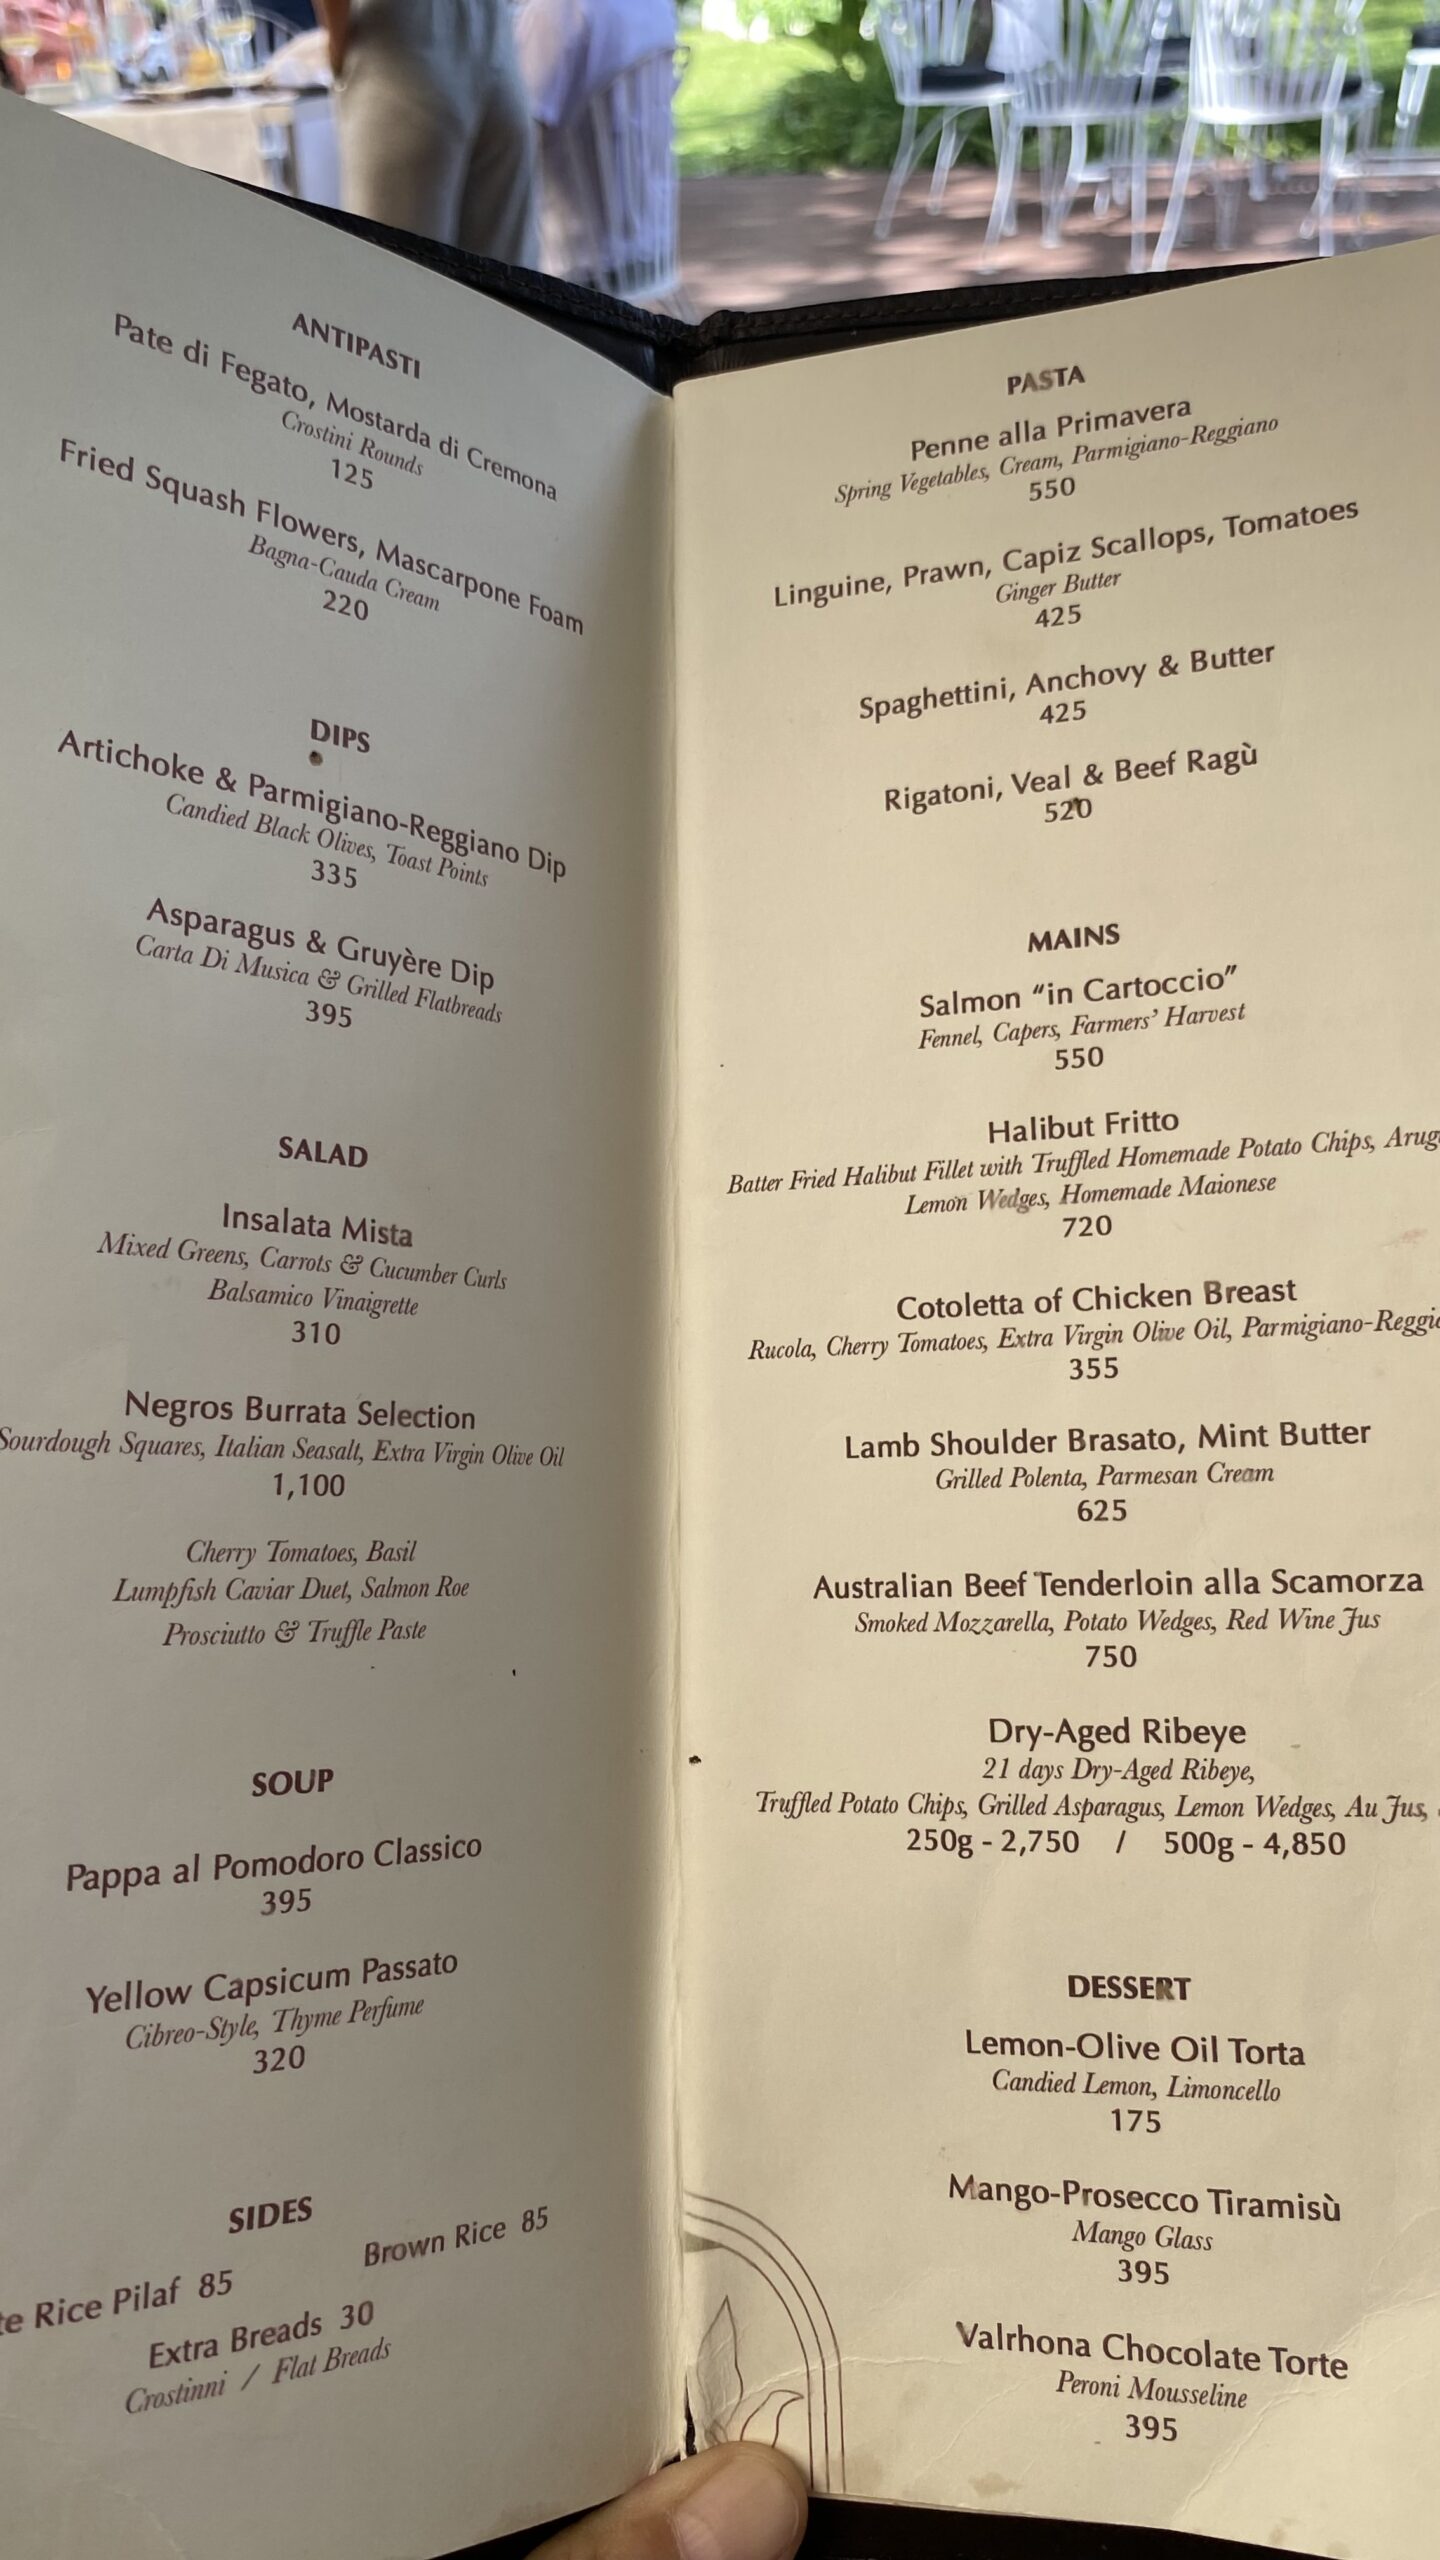 The Loggia menu